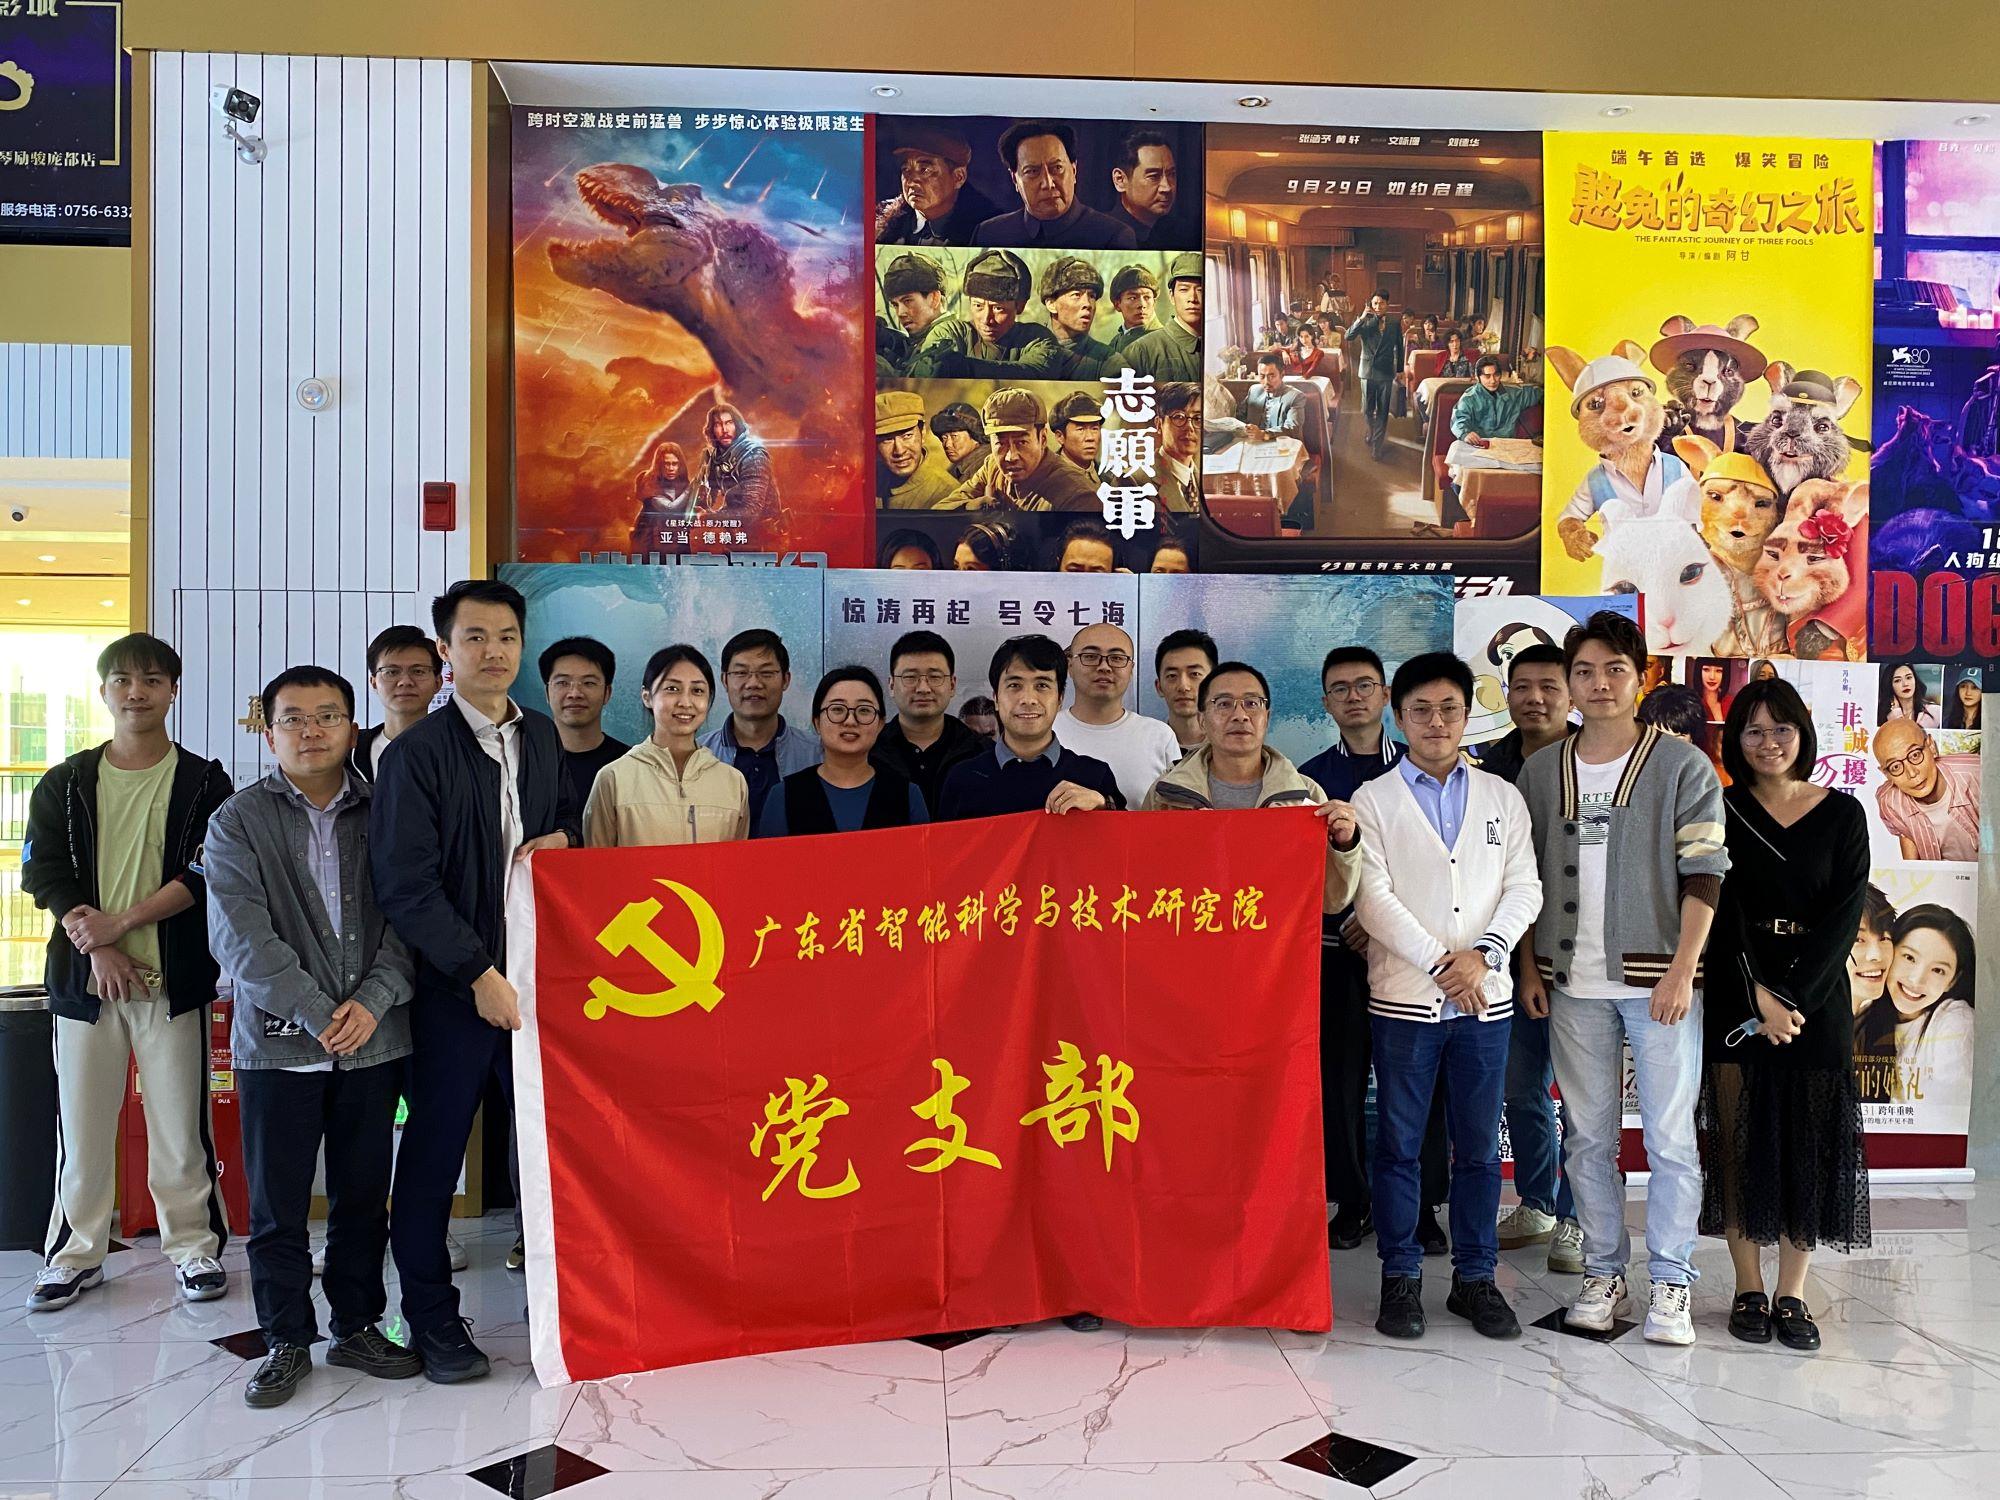 广东省智能院党支部组织开展 《三大队》主题教育观影活动